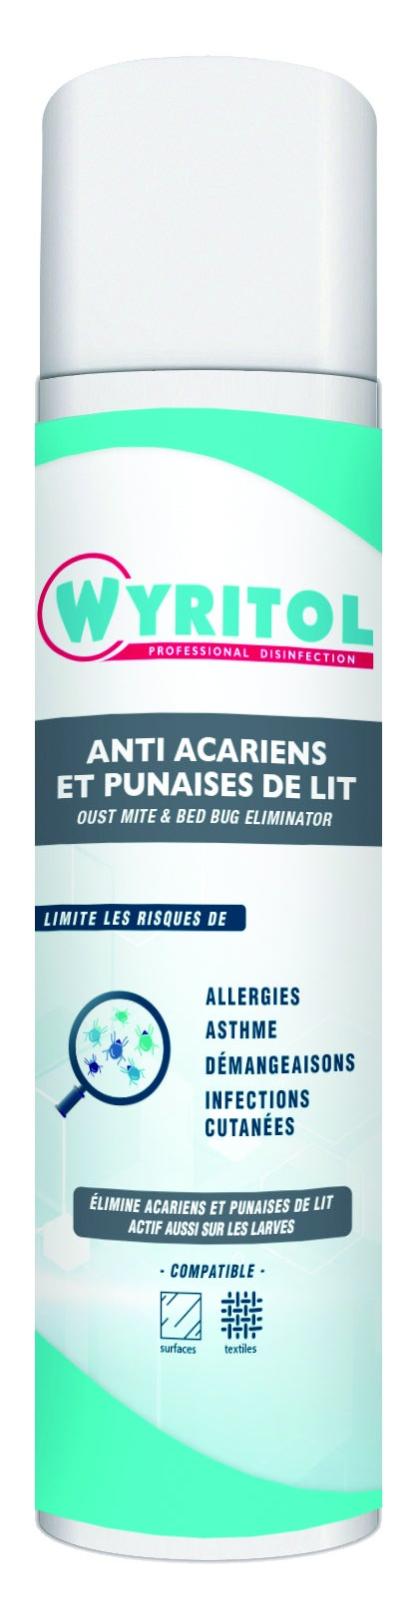 Traitement anti-acariens et punaises de lit WYRITOL 500ml